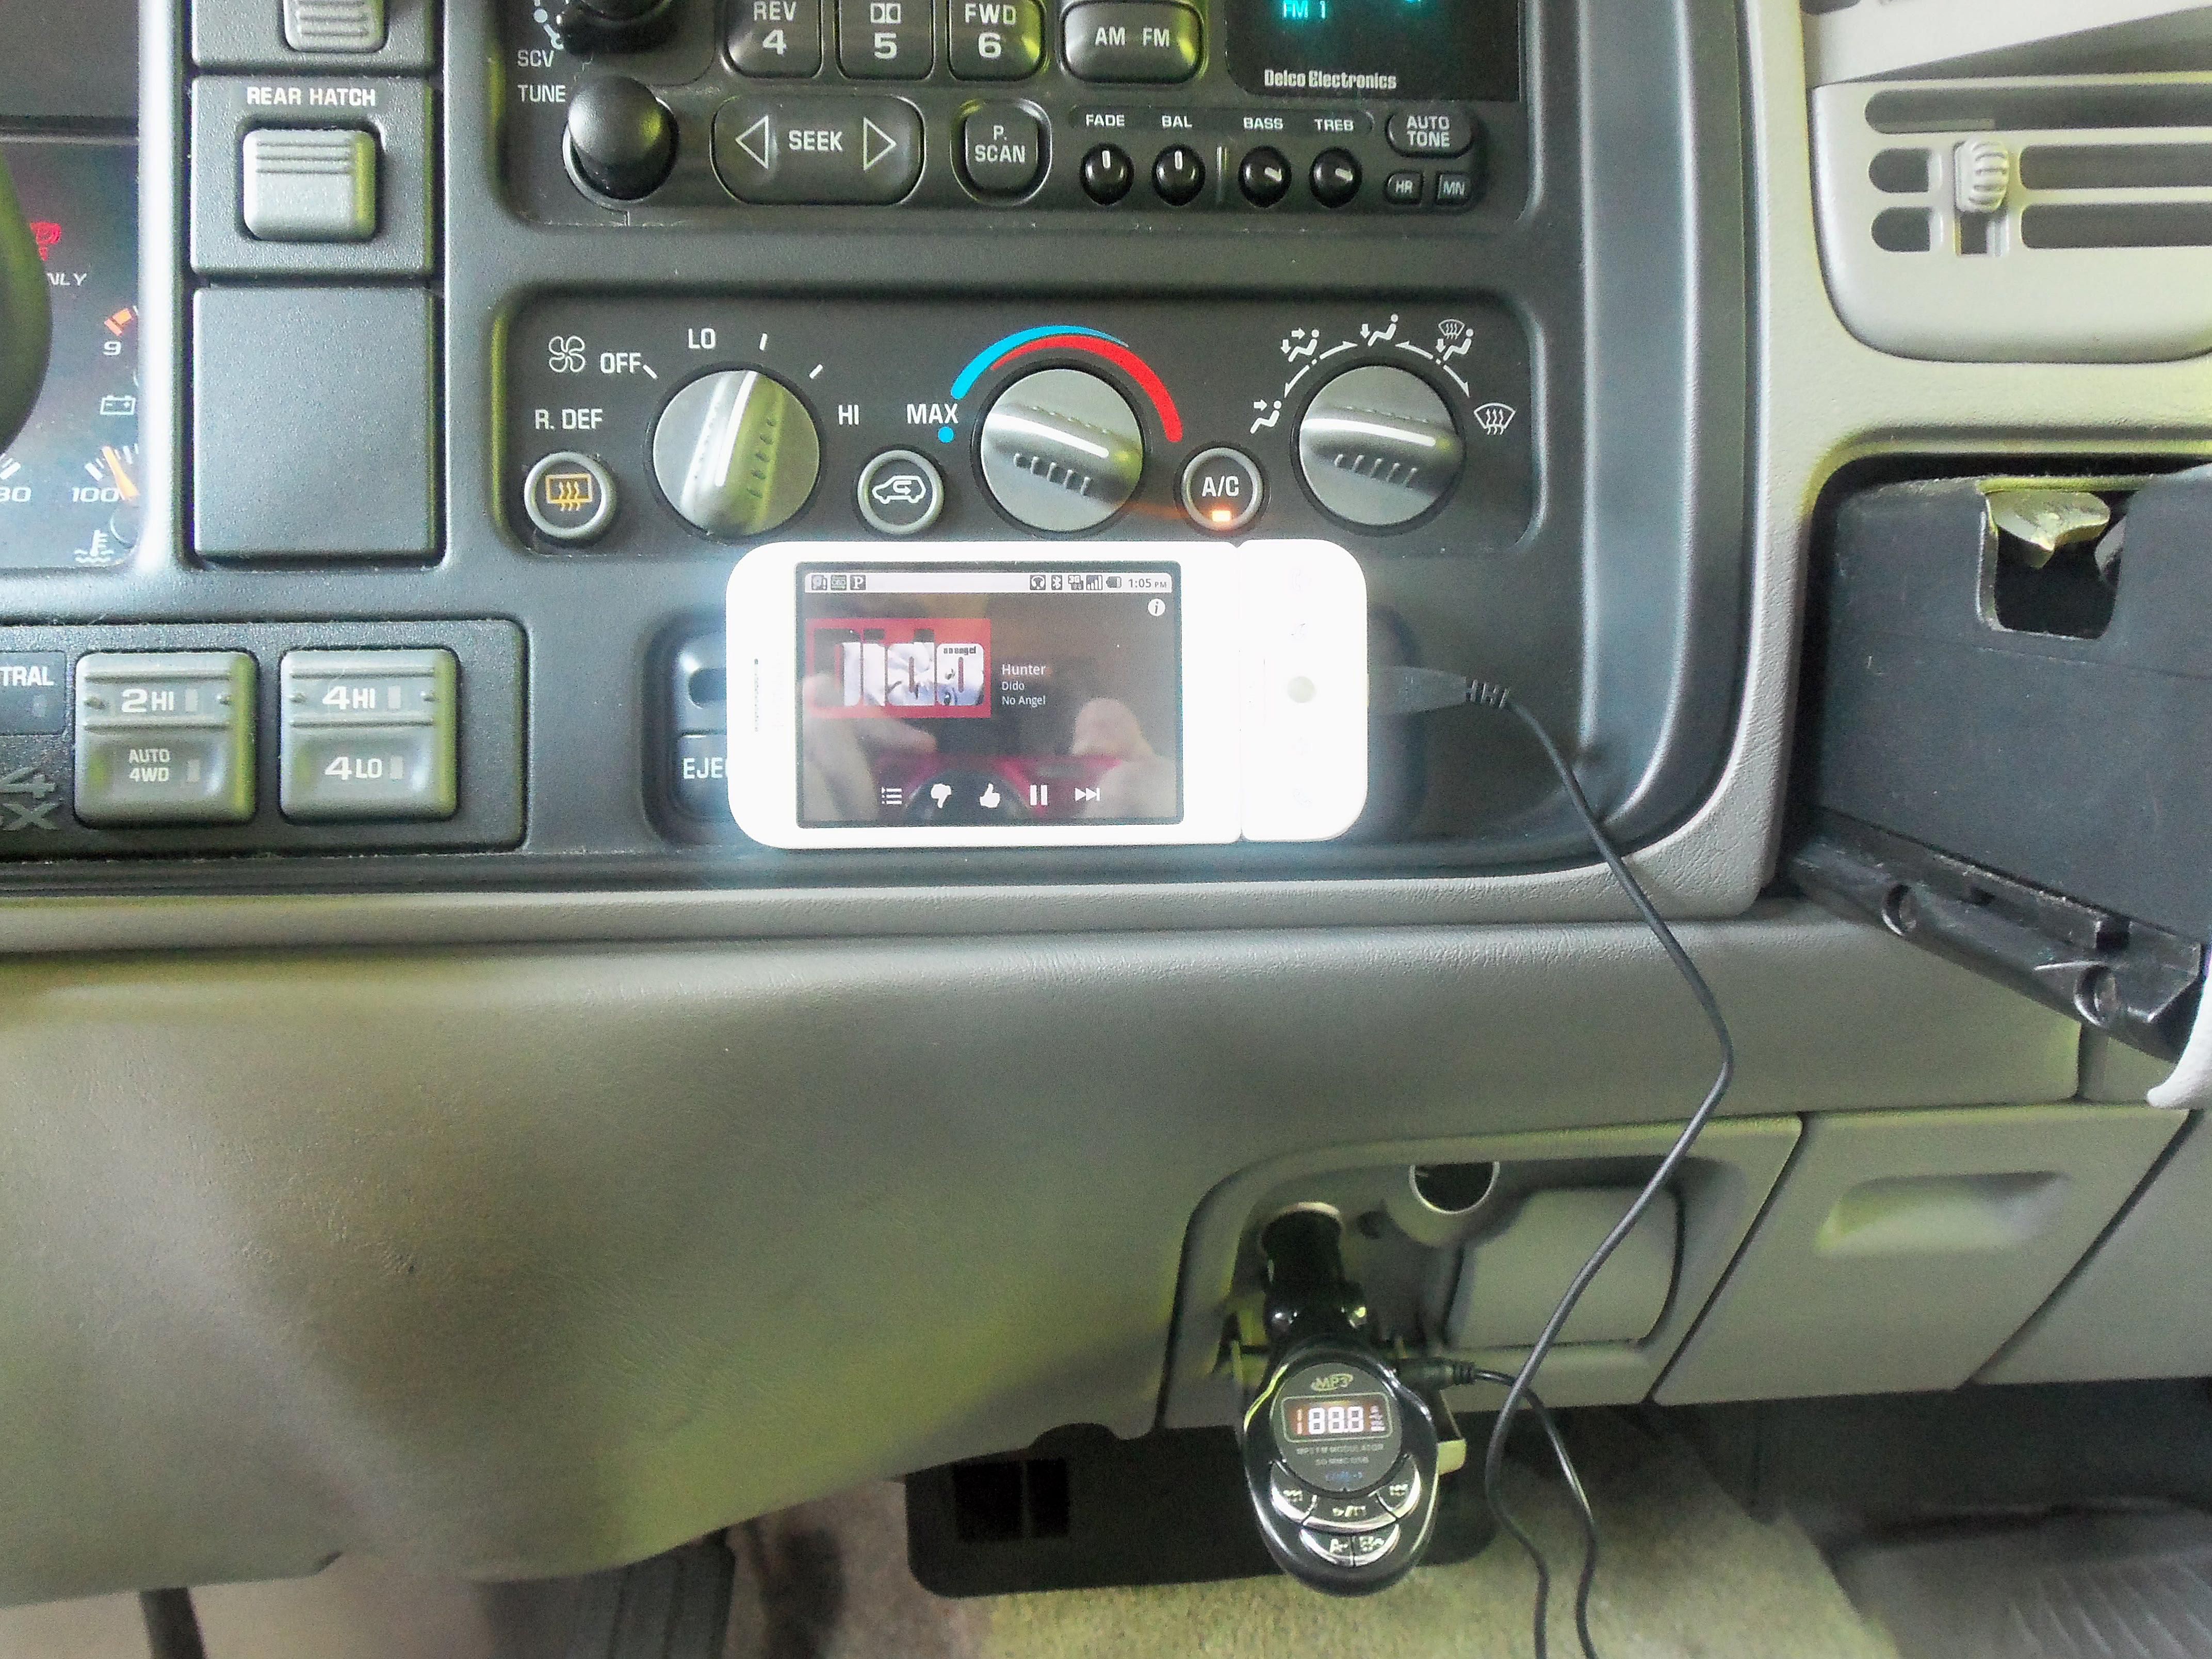 Vysílač FM zapojený do telefonu Android